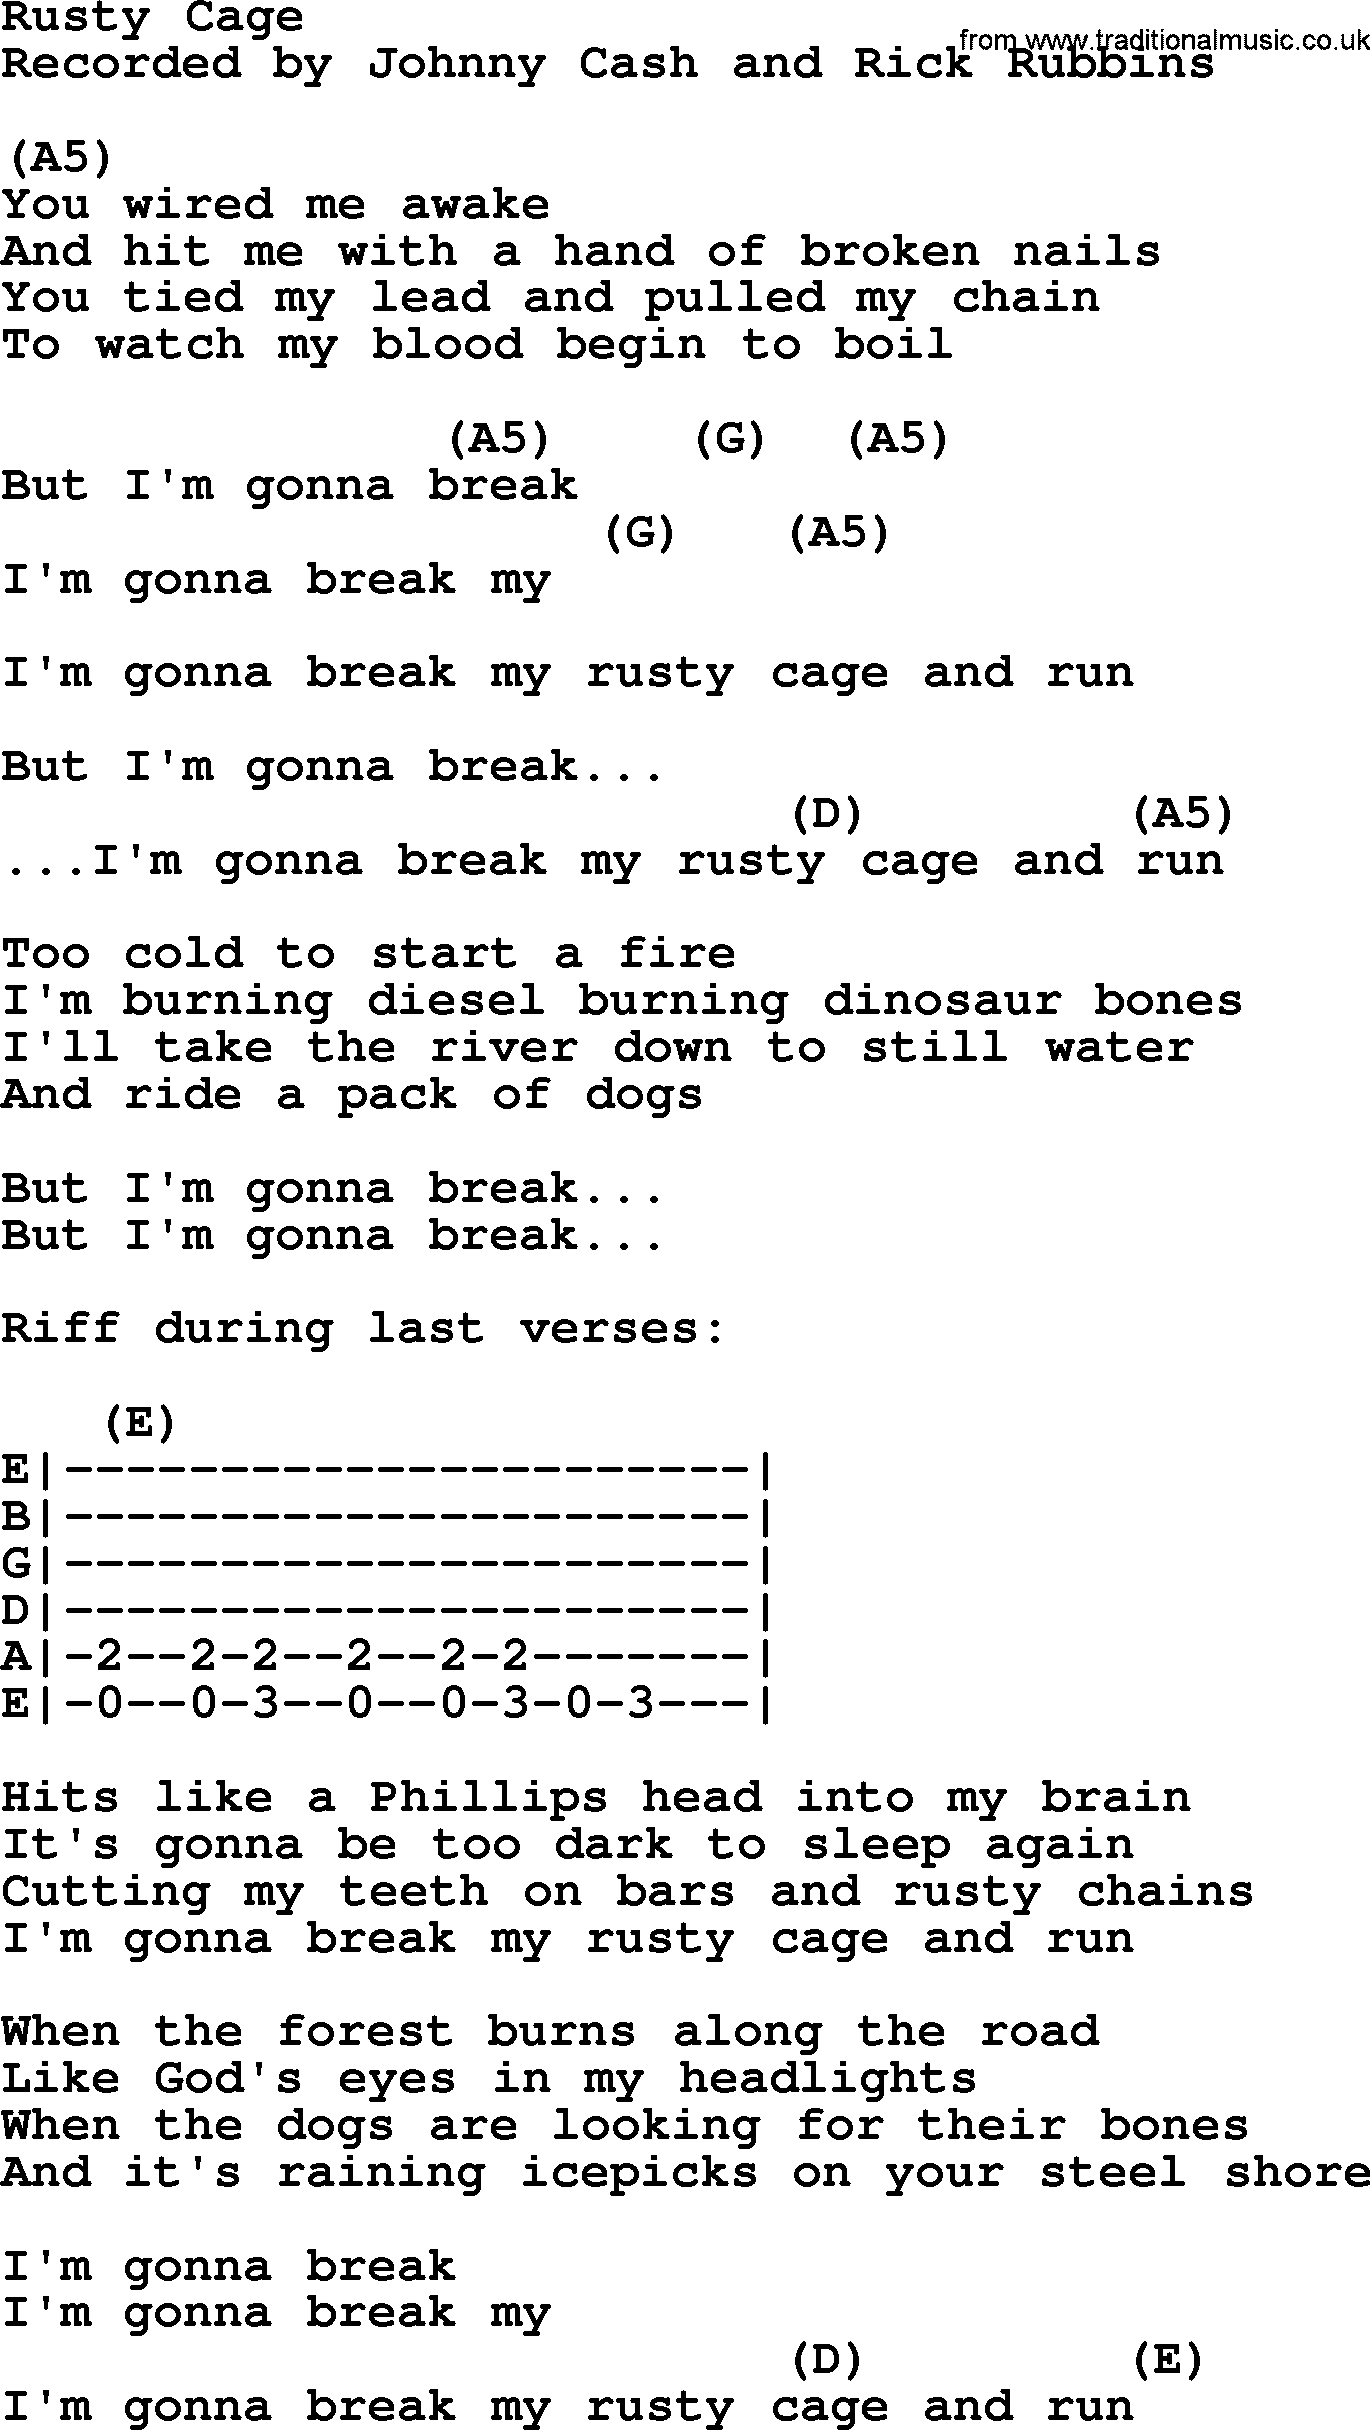 teeth and bones lyrics